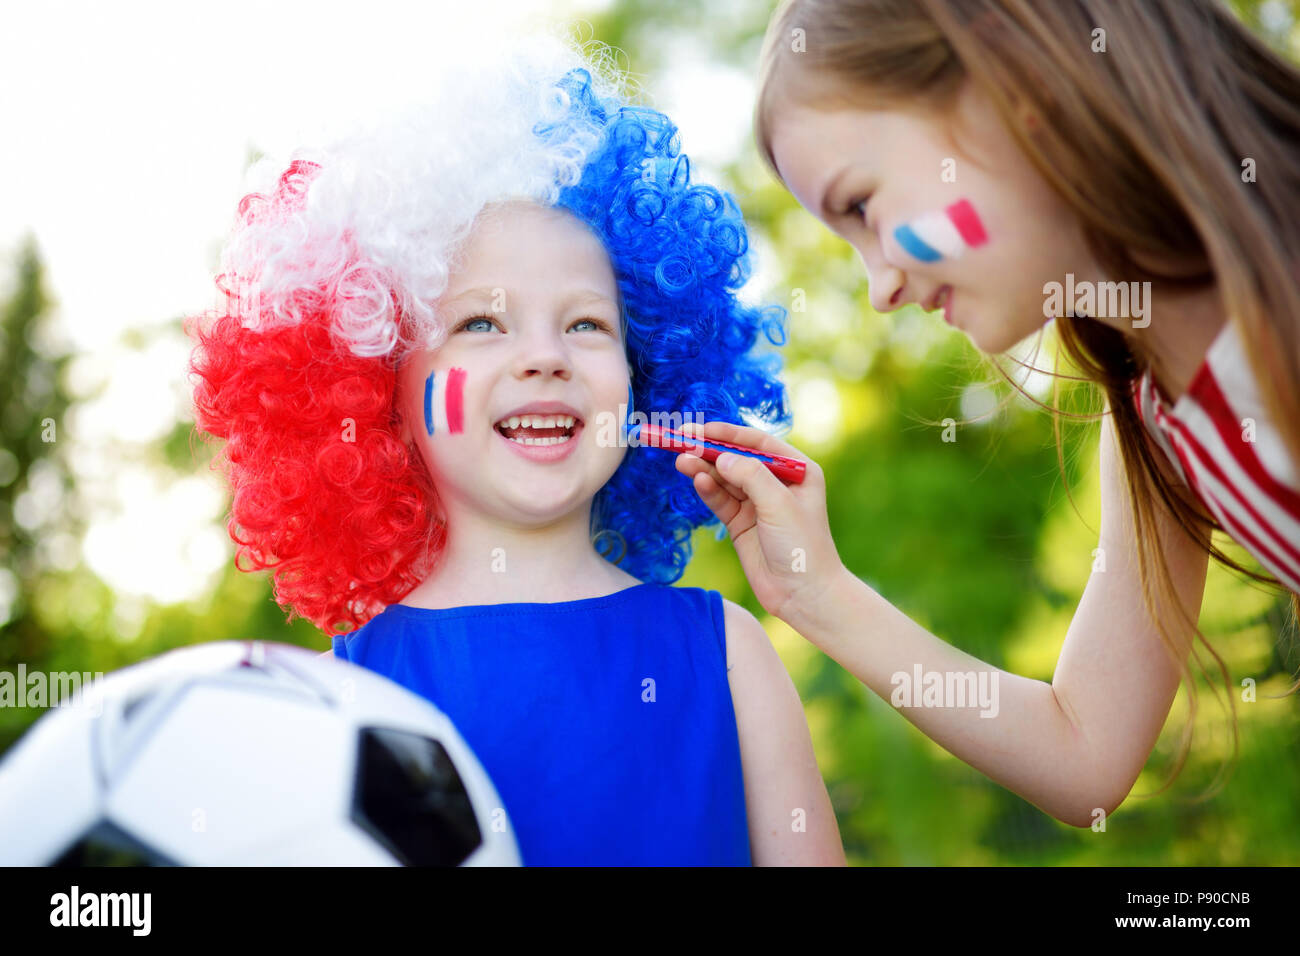 Dos hermanas gracioso, apoyar y animar a su equipo nacional de fútbol durante el campeonato de fútbol Foto de stock